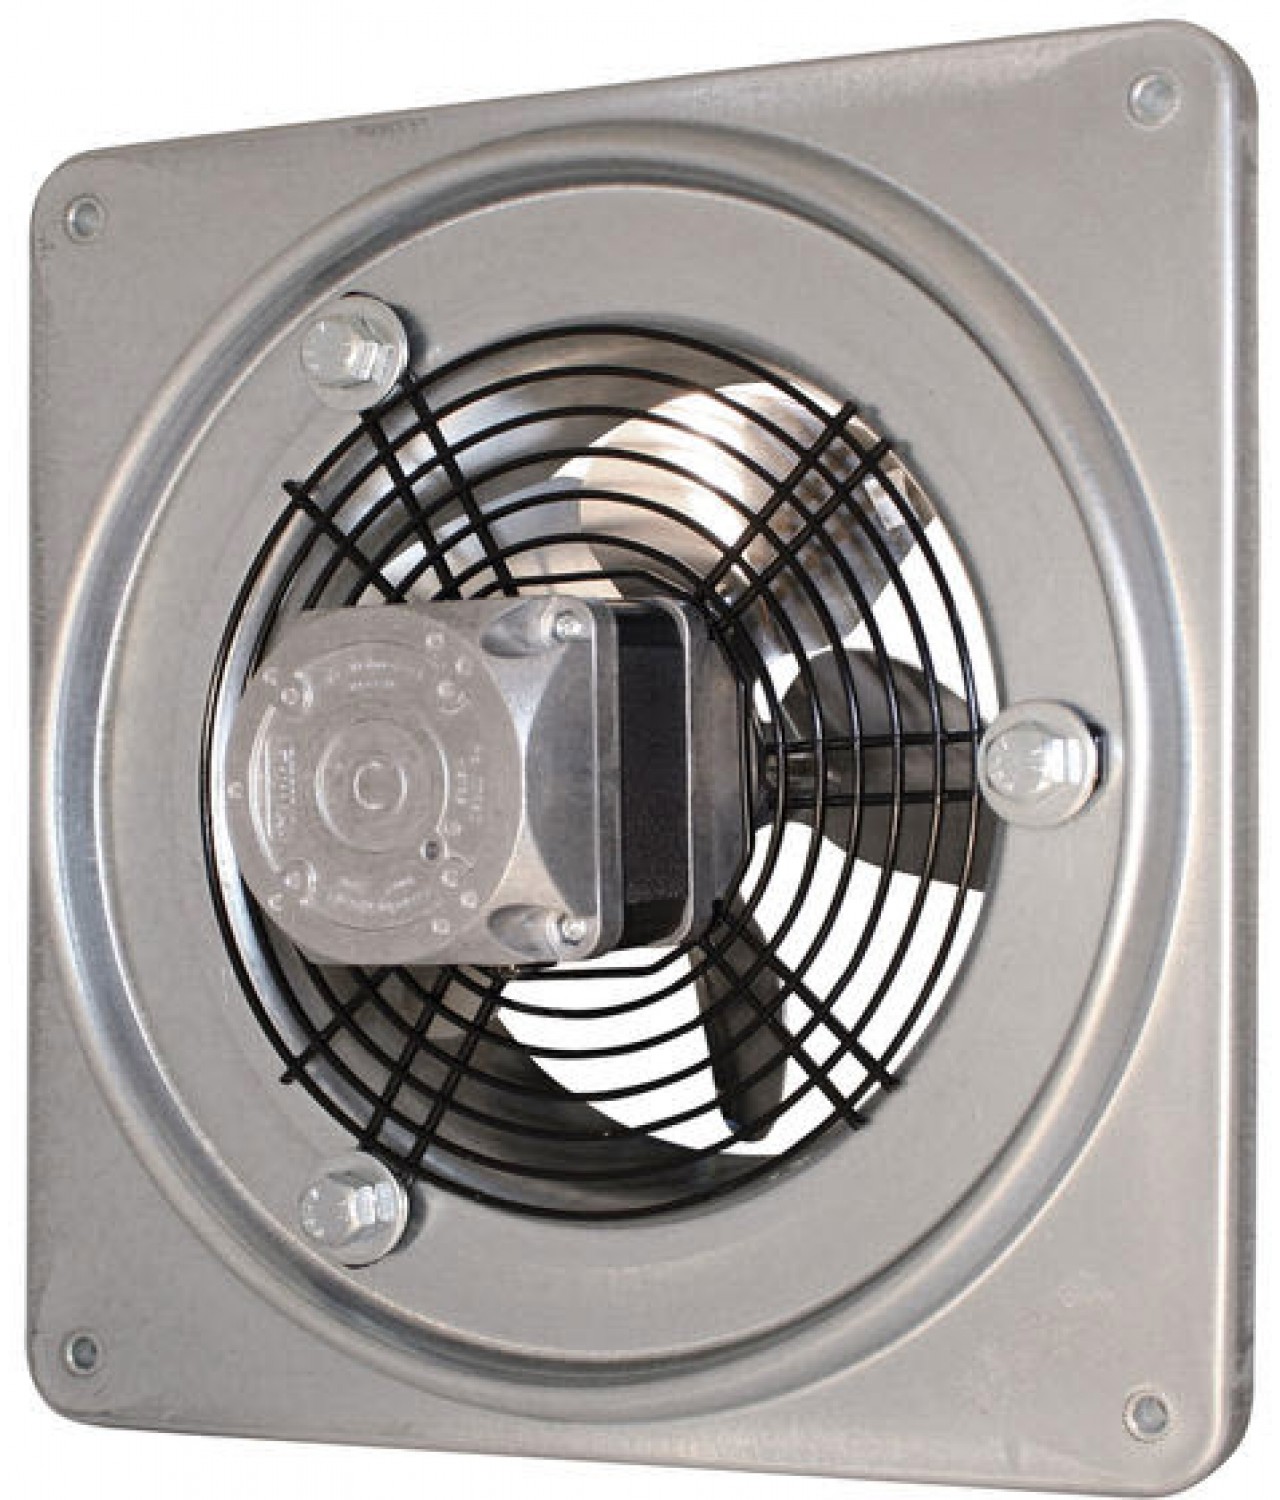 QCS - ašiniai ventiliatoriai ≤1950 m³/h